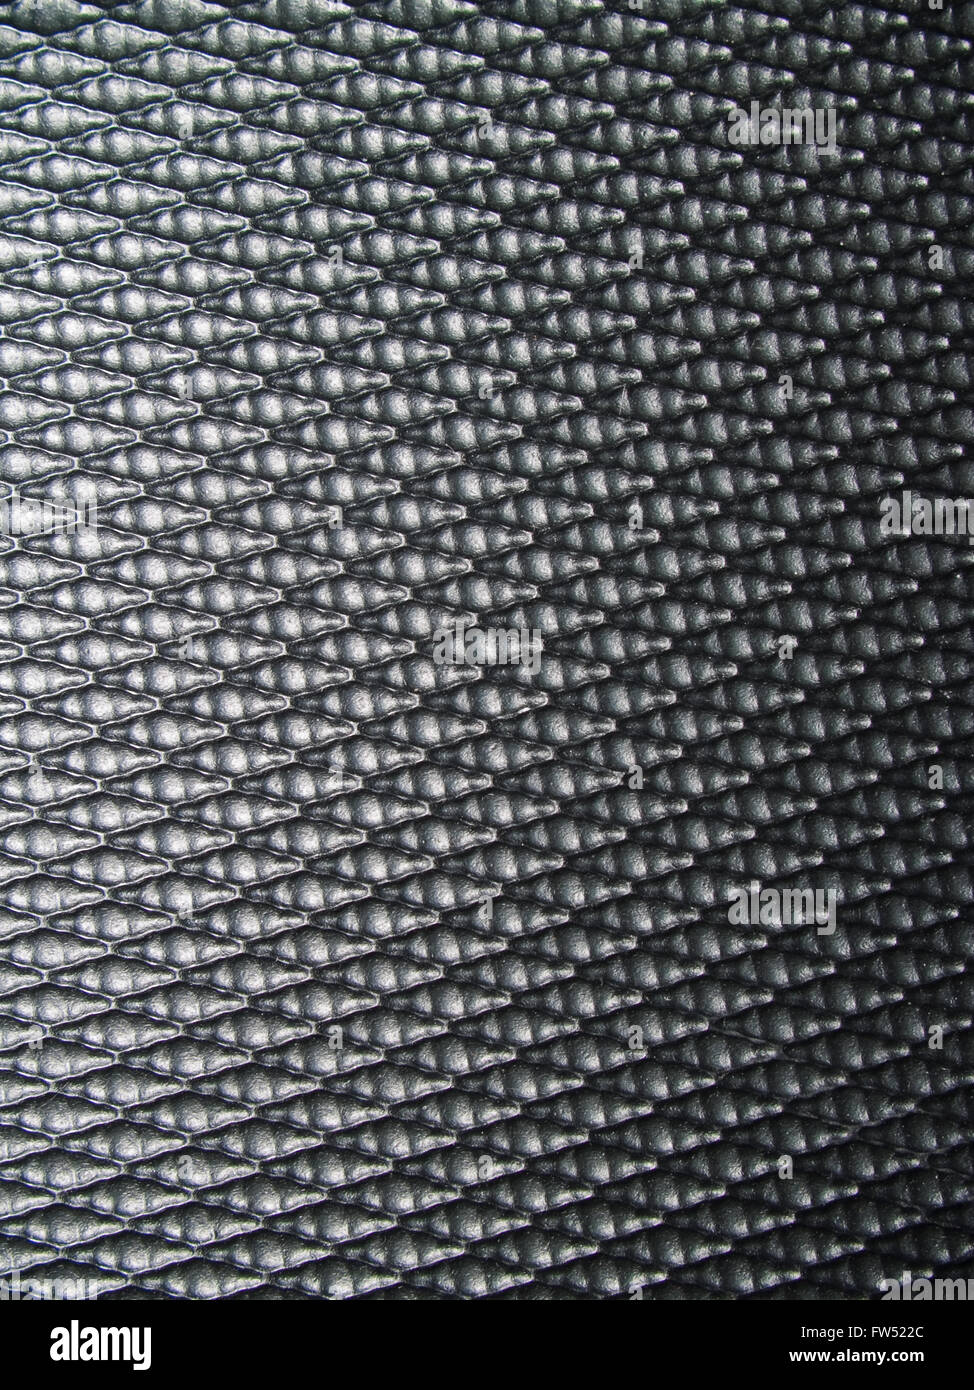 Black fiber mesh pattern Stock Photo